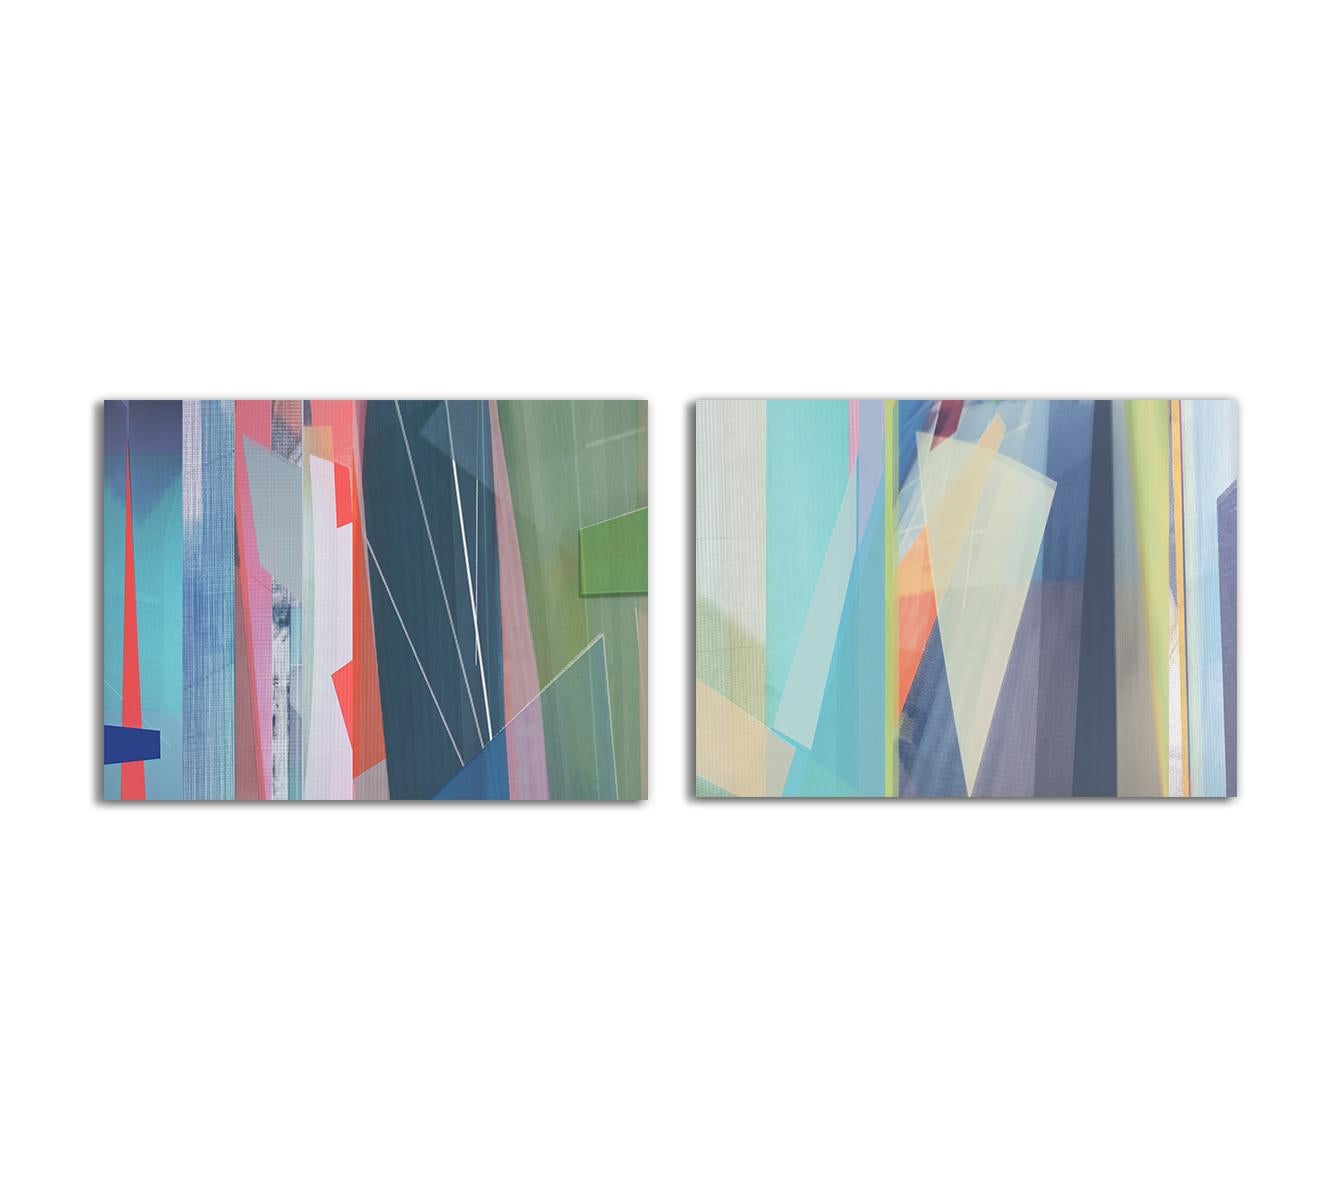 Color Photograph Monika Bravo - Parallel Fields #8 et #9. Photographie en couleur abstraite à tirage limité